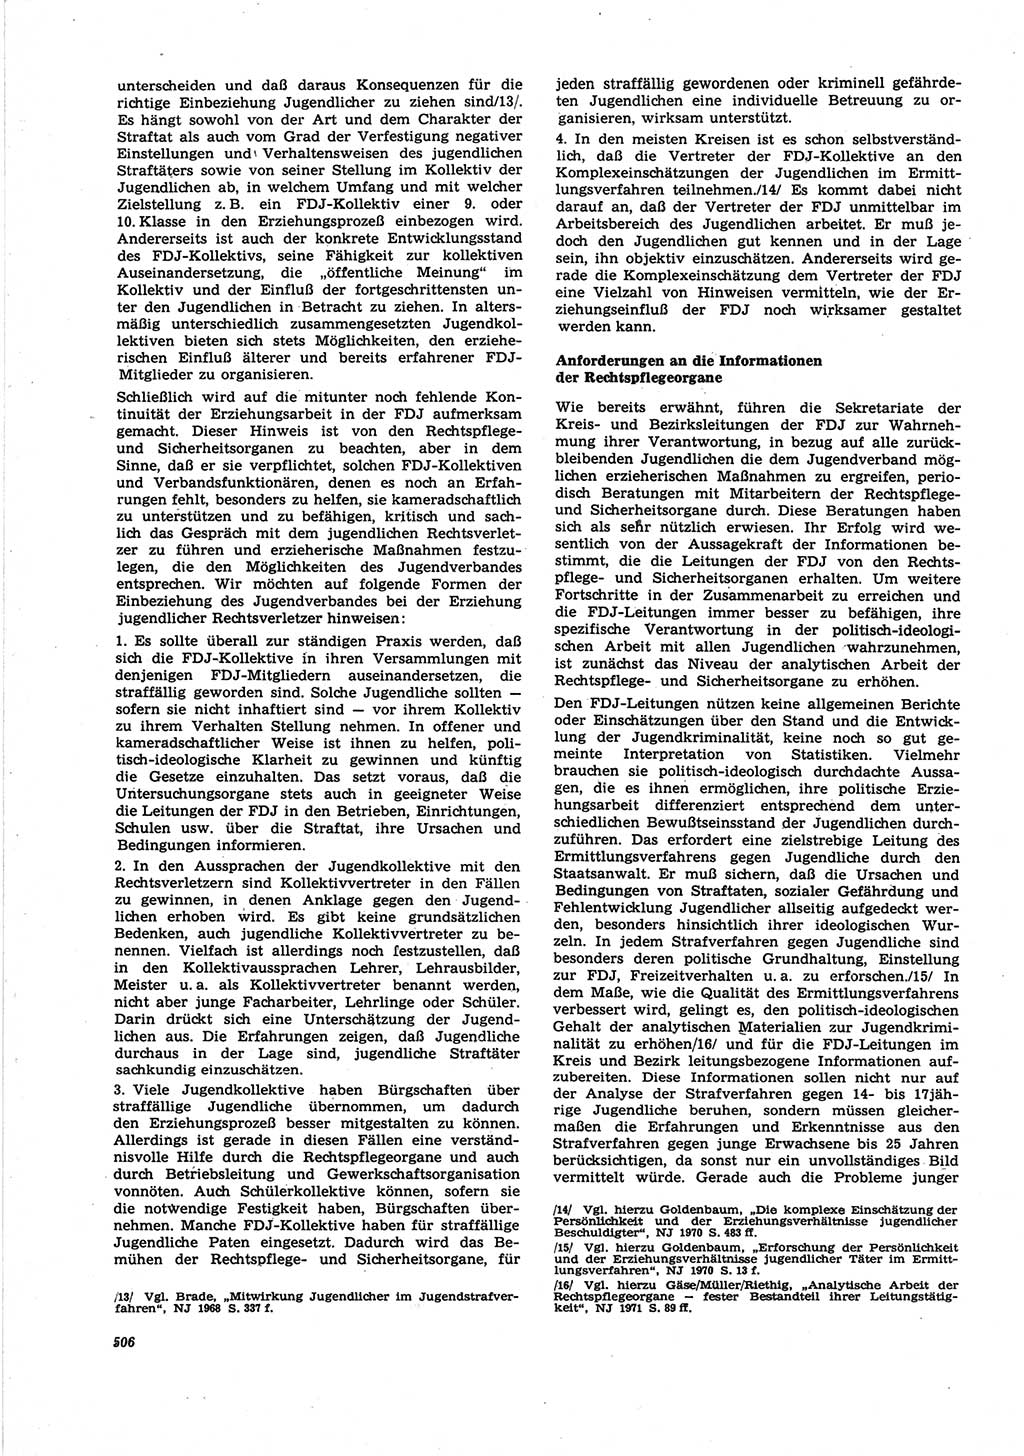 Neue Justiz (NJ), Zeitschrift für Recht und Rechtswissenschaft [Deutsche Demokratische Republik (DDR)], 25. Jahrgang 1971, Seite 506 (NJ DDR 1971, S. 506)